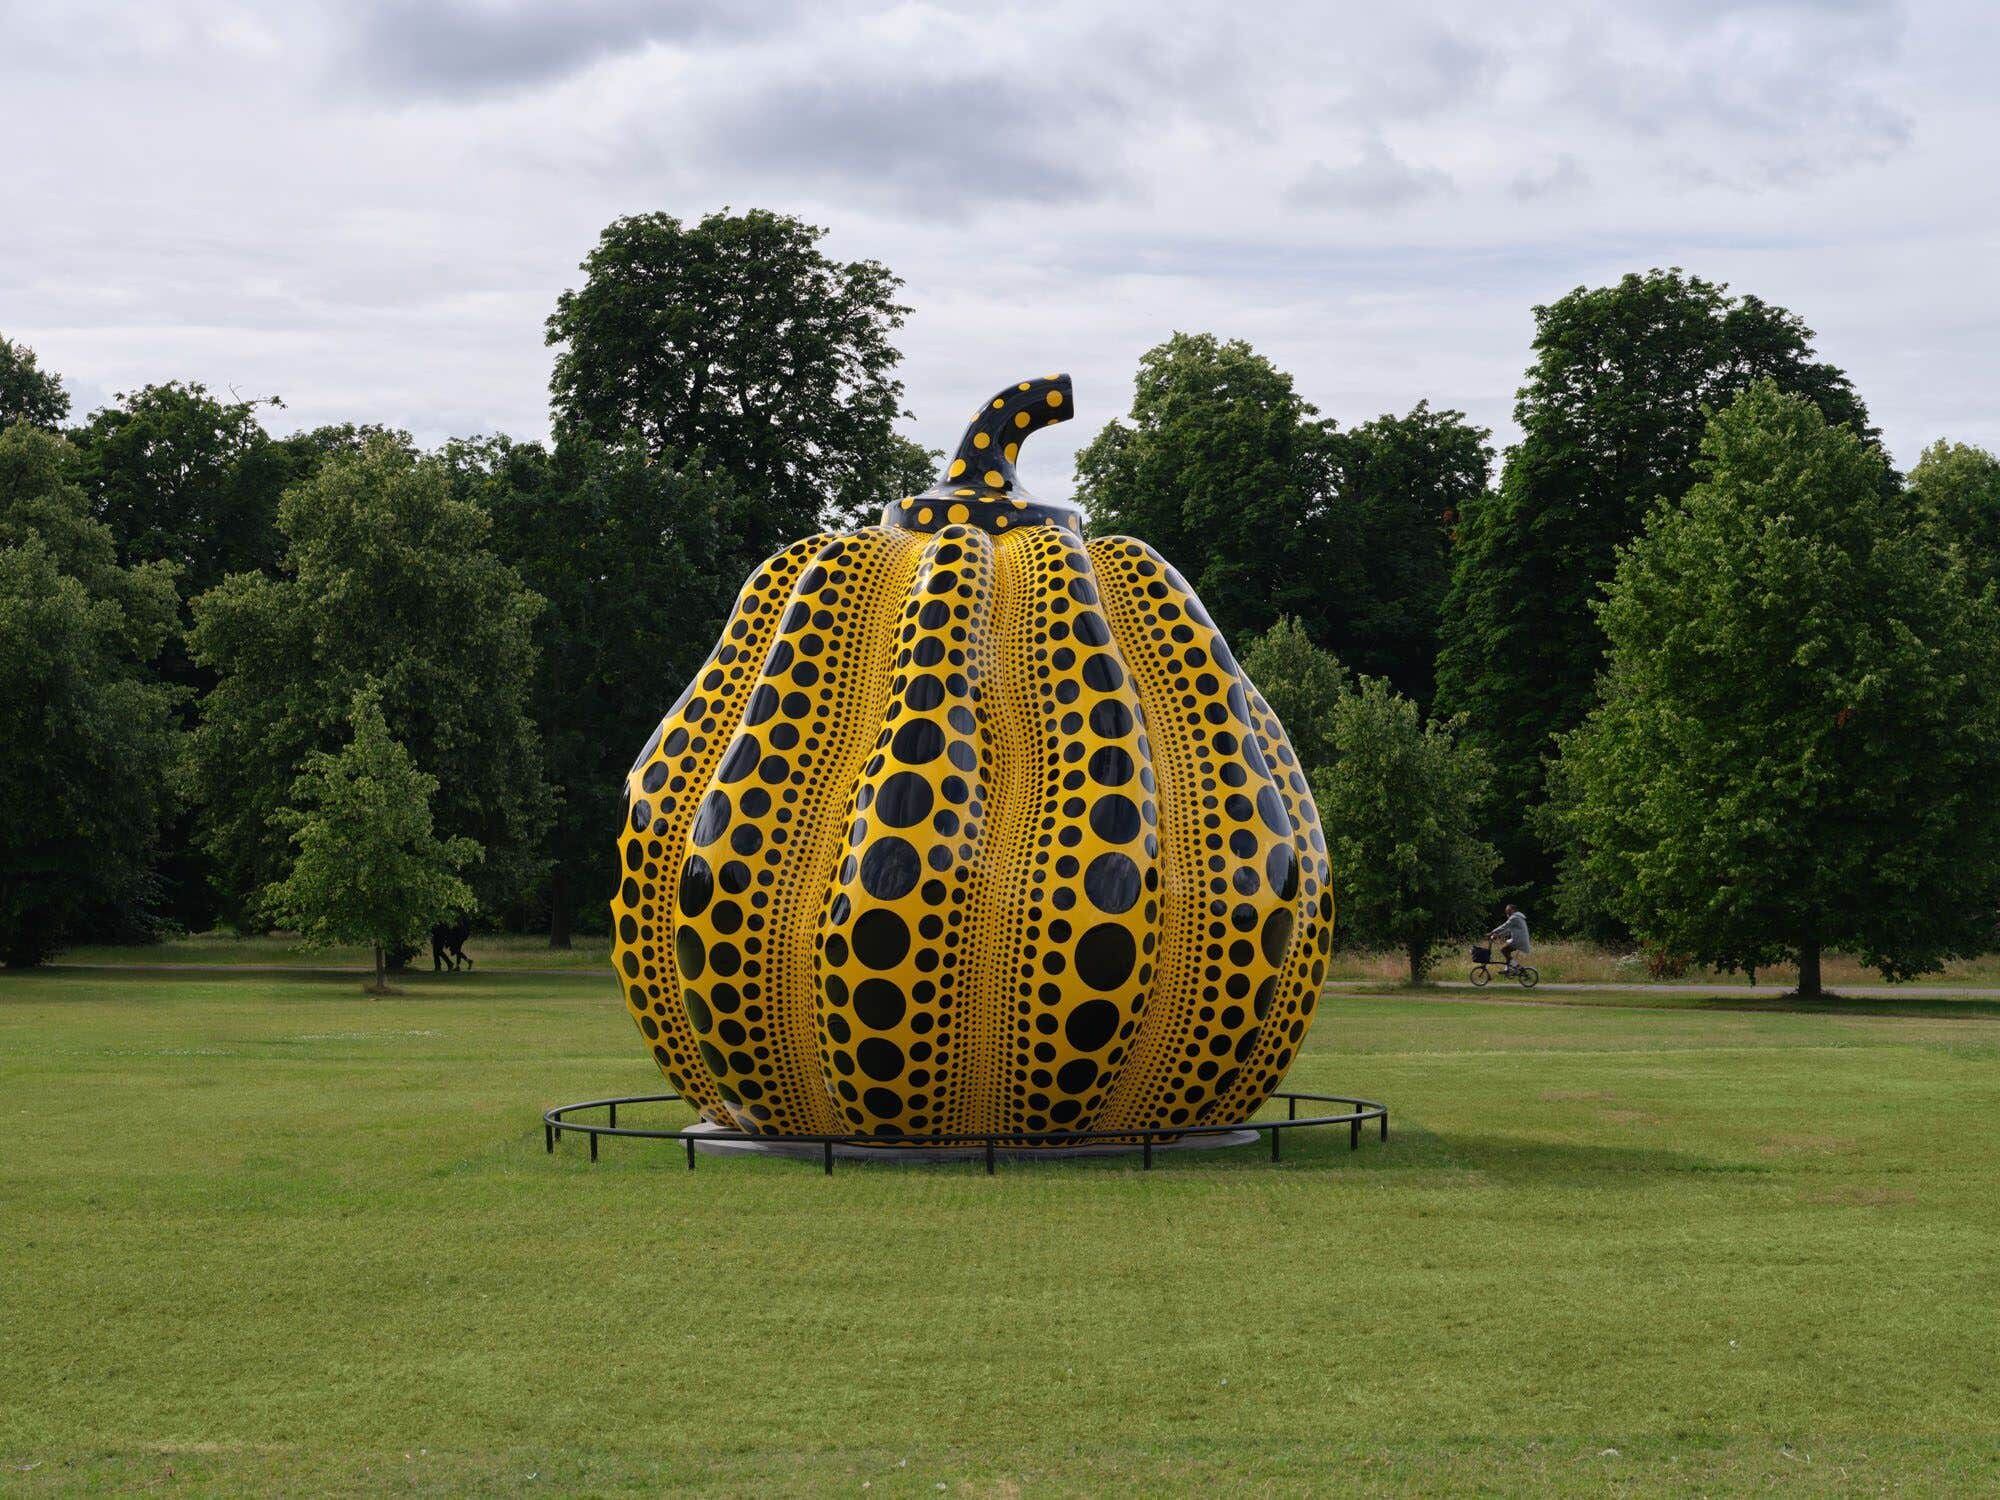 Serpentine unveils pumpkin sculpture by Yayoi Kusama in Kensington Gardens